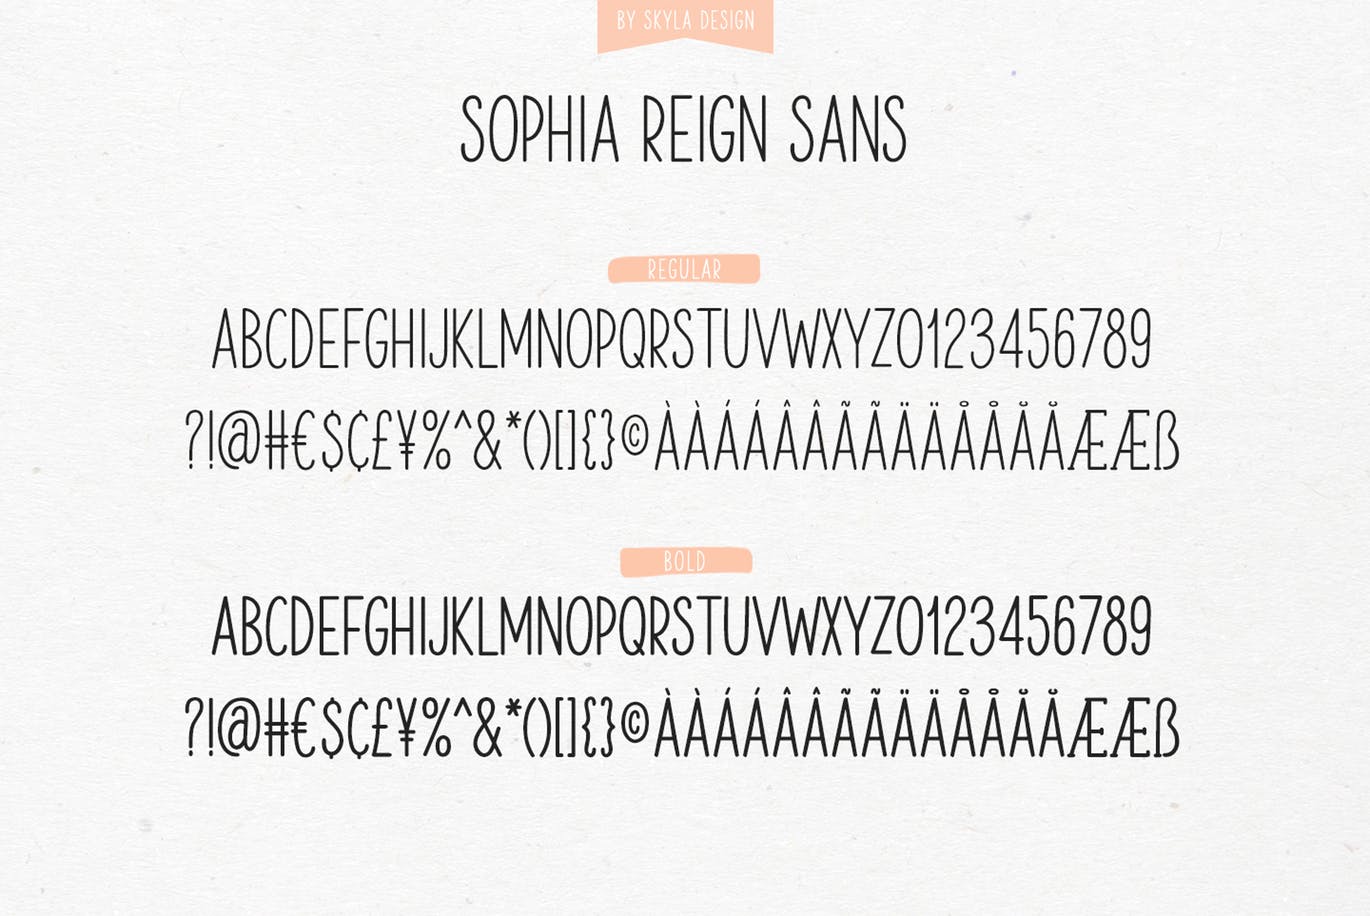 英文钢笔签名字体非凡图库精选&大写字母正楷字体非凡图库精选二重奏 Sophia Reign signature font duo插图(1)